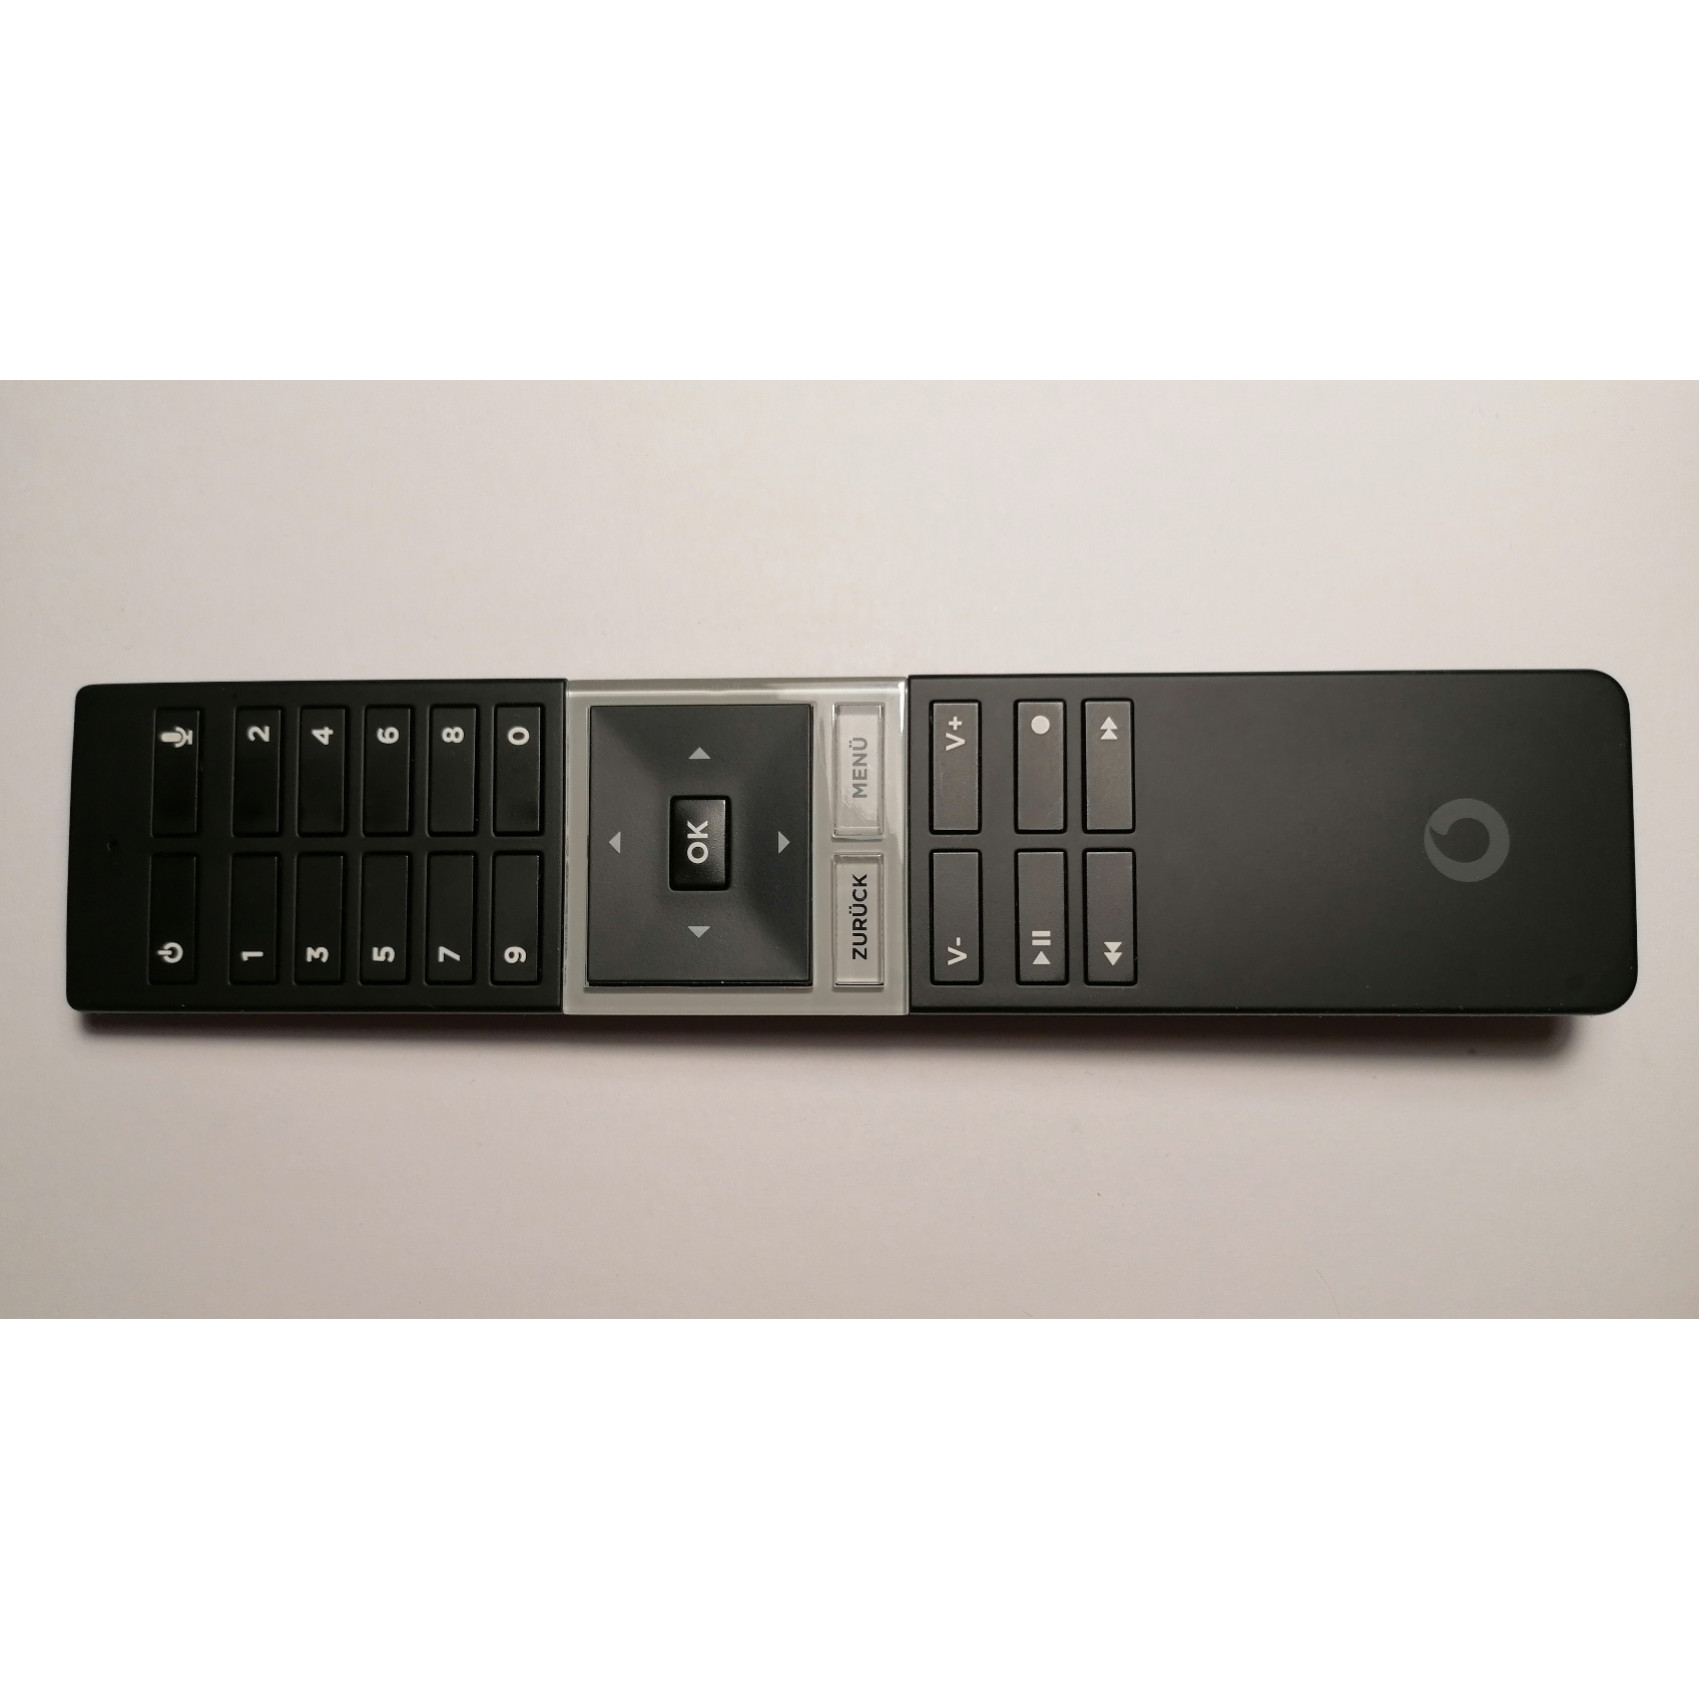 Original Vodafone GigaTV 4K Box Remote Control URC730101-00R00